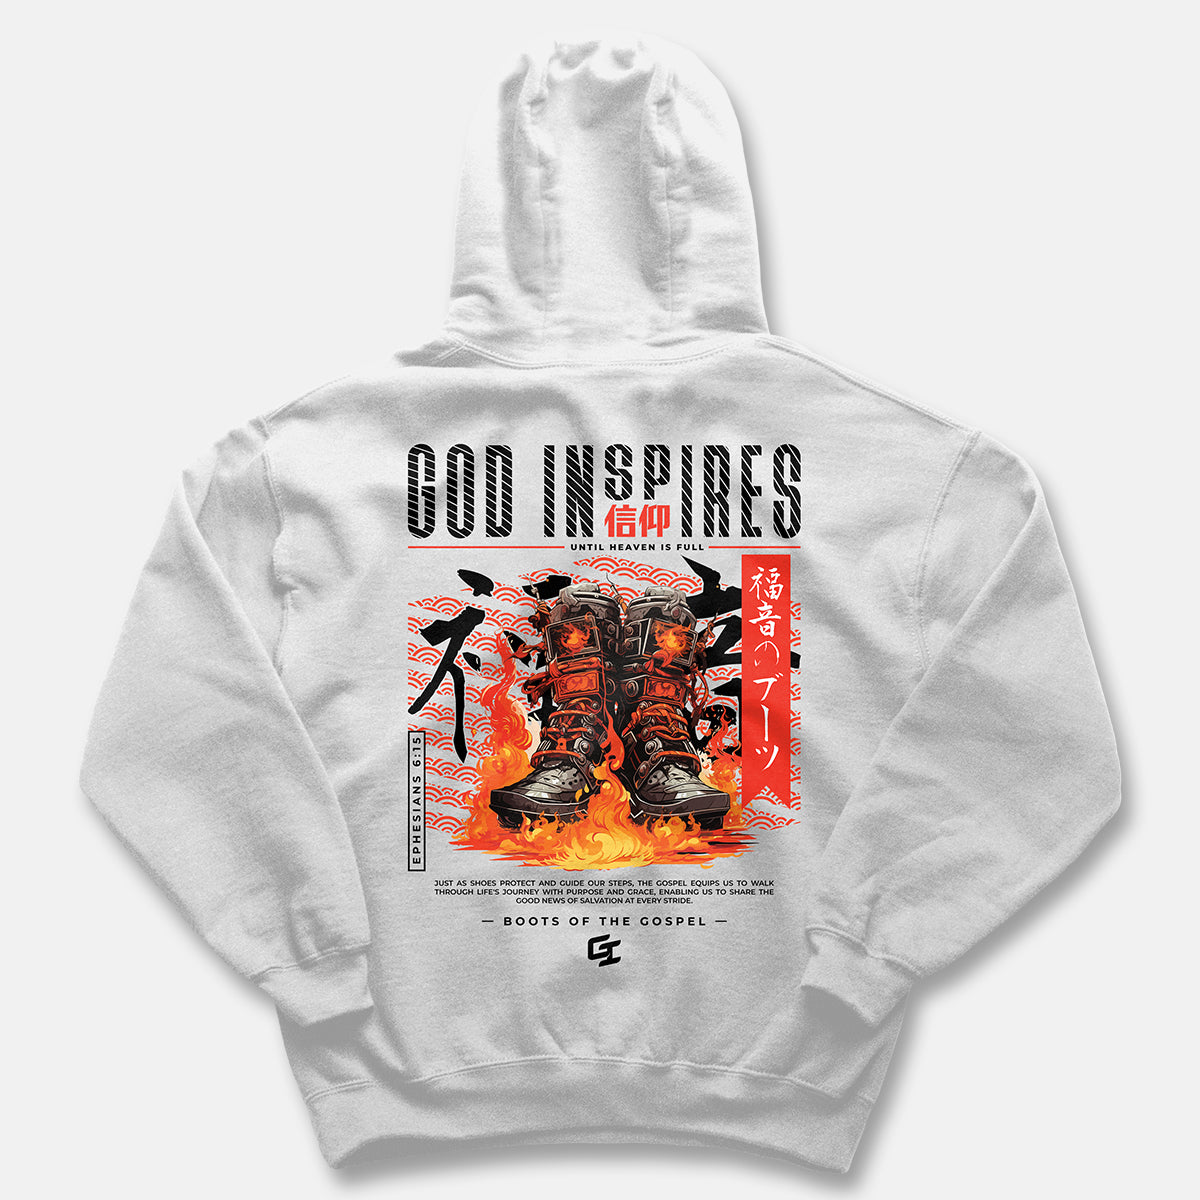 God Inspires